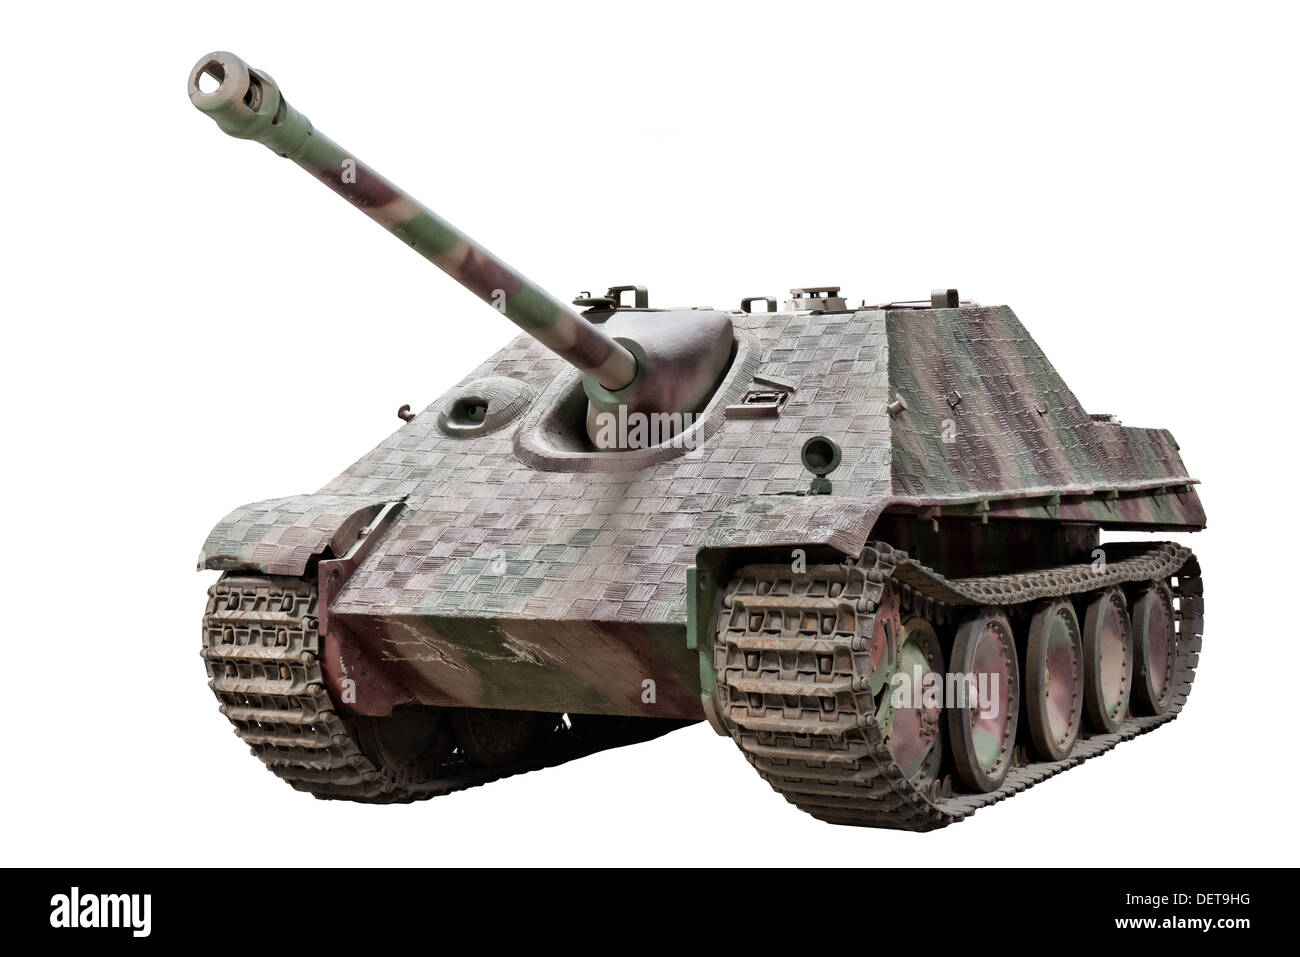 Une coupe sur un Jagdpanzer V (5) (SD.KFZ.173) 88 mm canon antichar automoteur. Utilisé par les forces de l'Allemagne nazie pendant la SECONDE GUERRE MONDIALE Banque D'Images